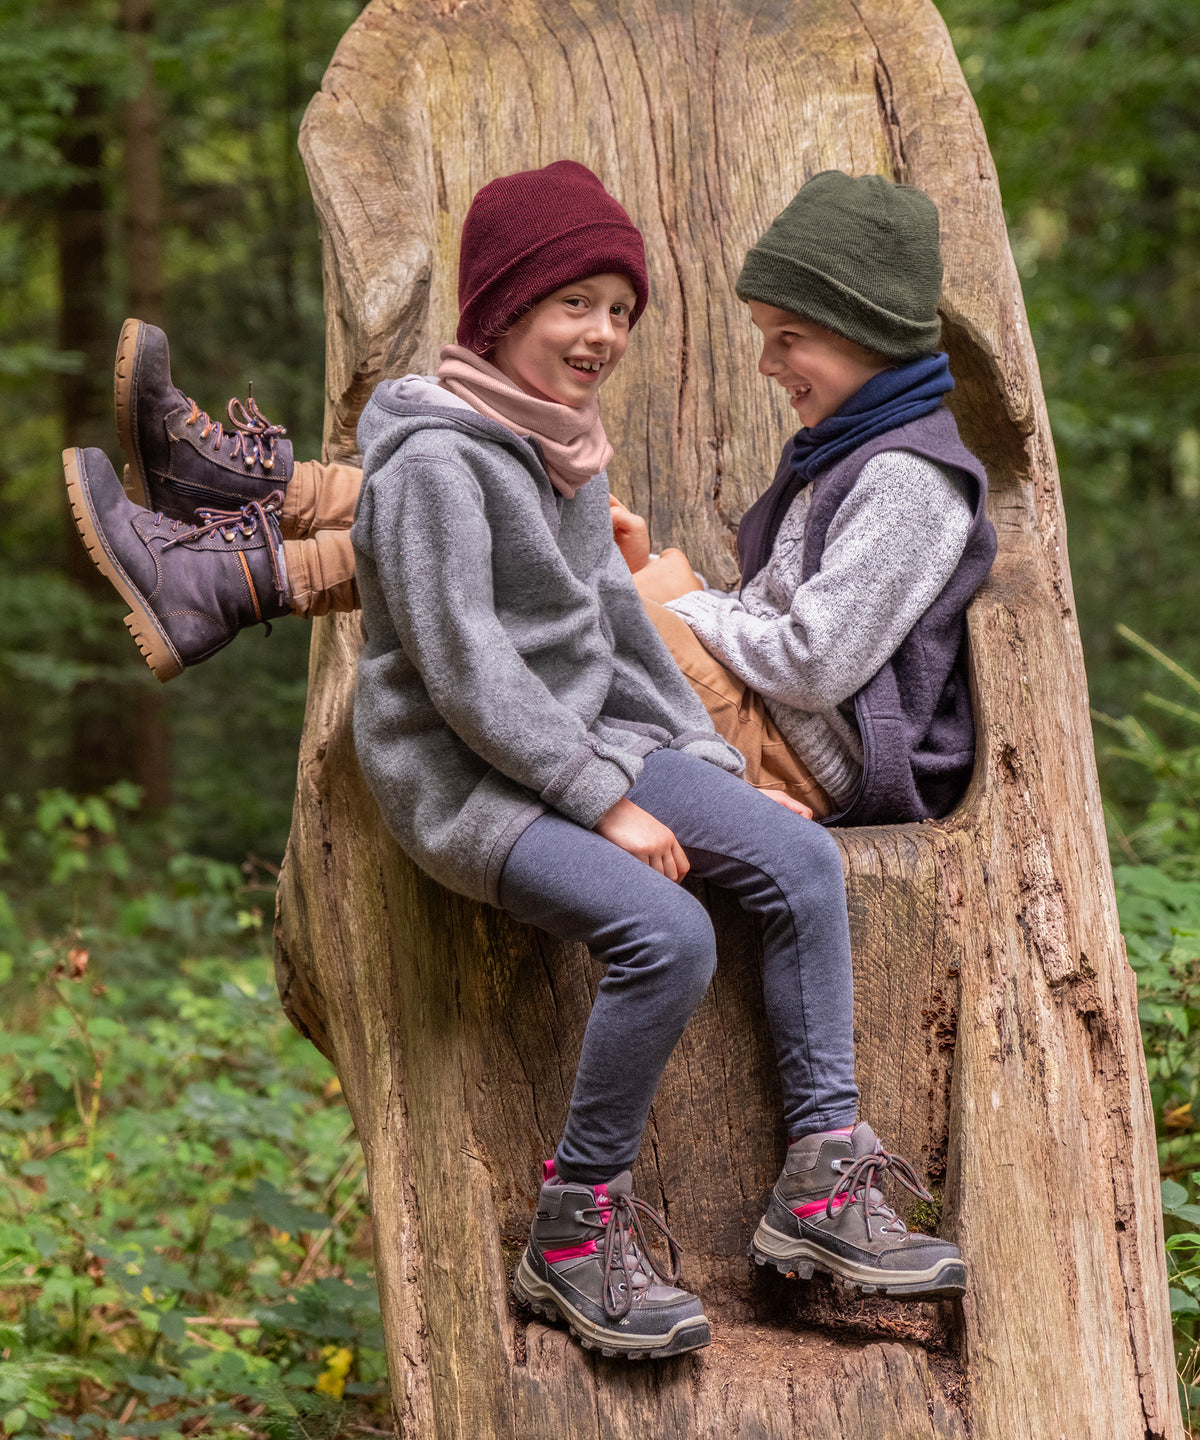 Zwei Kinder mit Schlauchschal und Strickmütze sitzen auf Baumstumpf im Wald.